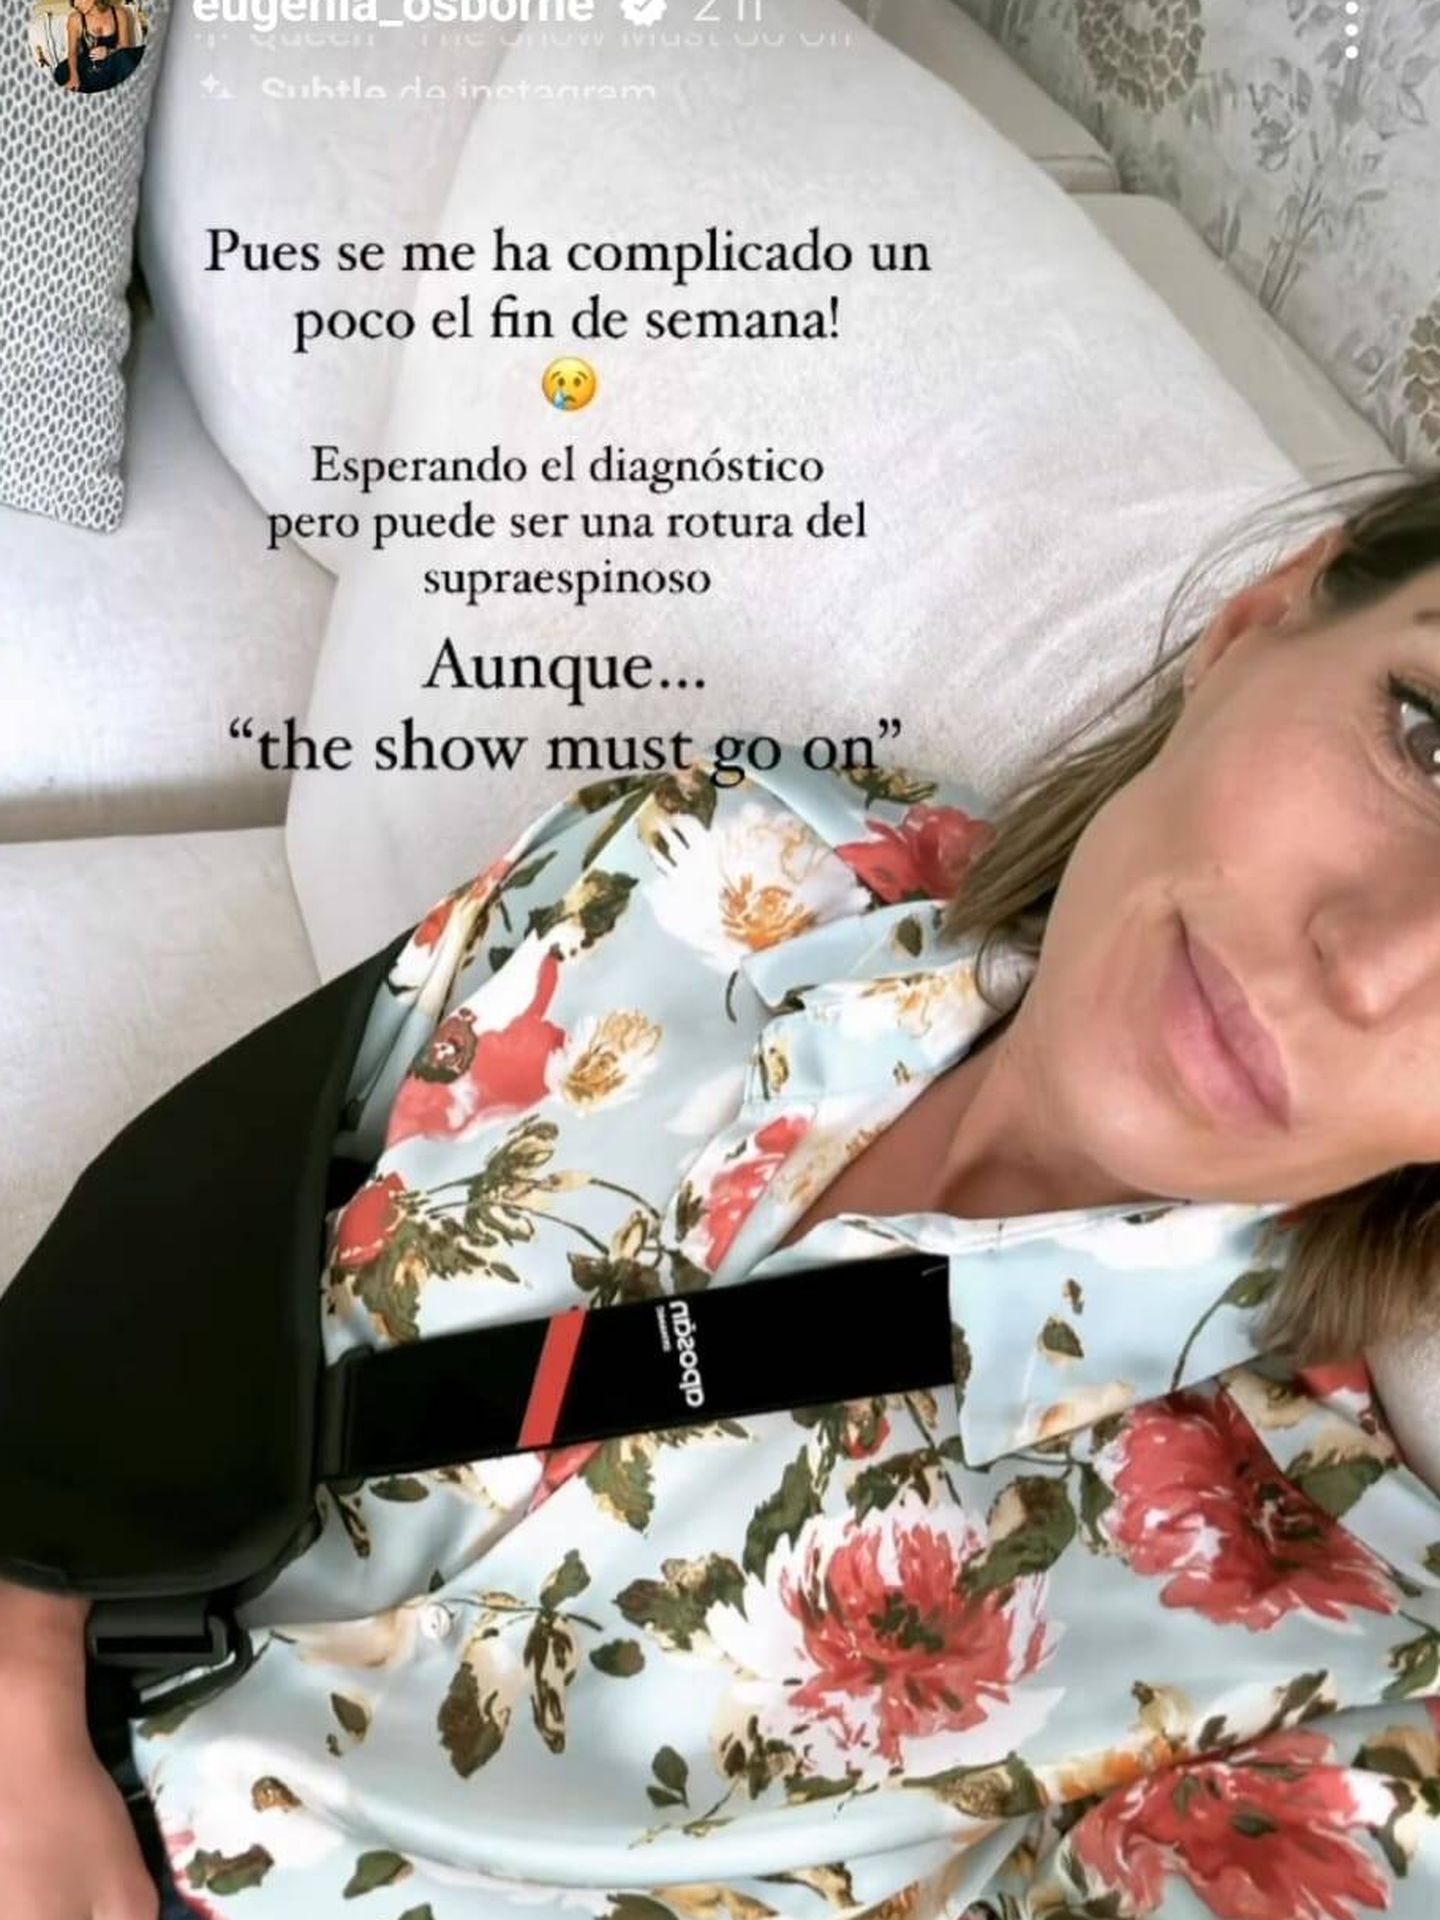 Eugenia ha compartido con sus seguidores su incidente de salud. (Instagram@eugenia_osborne)